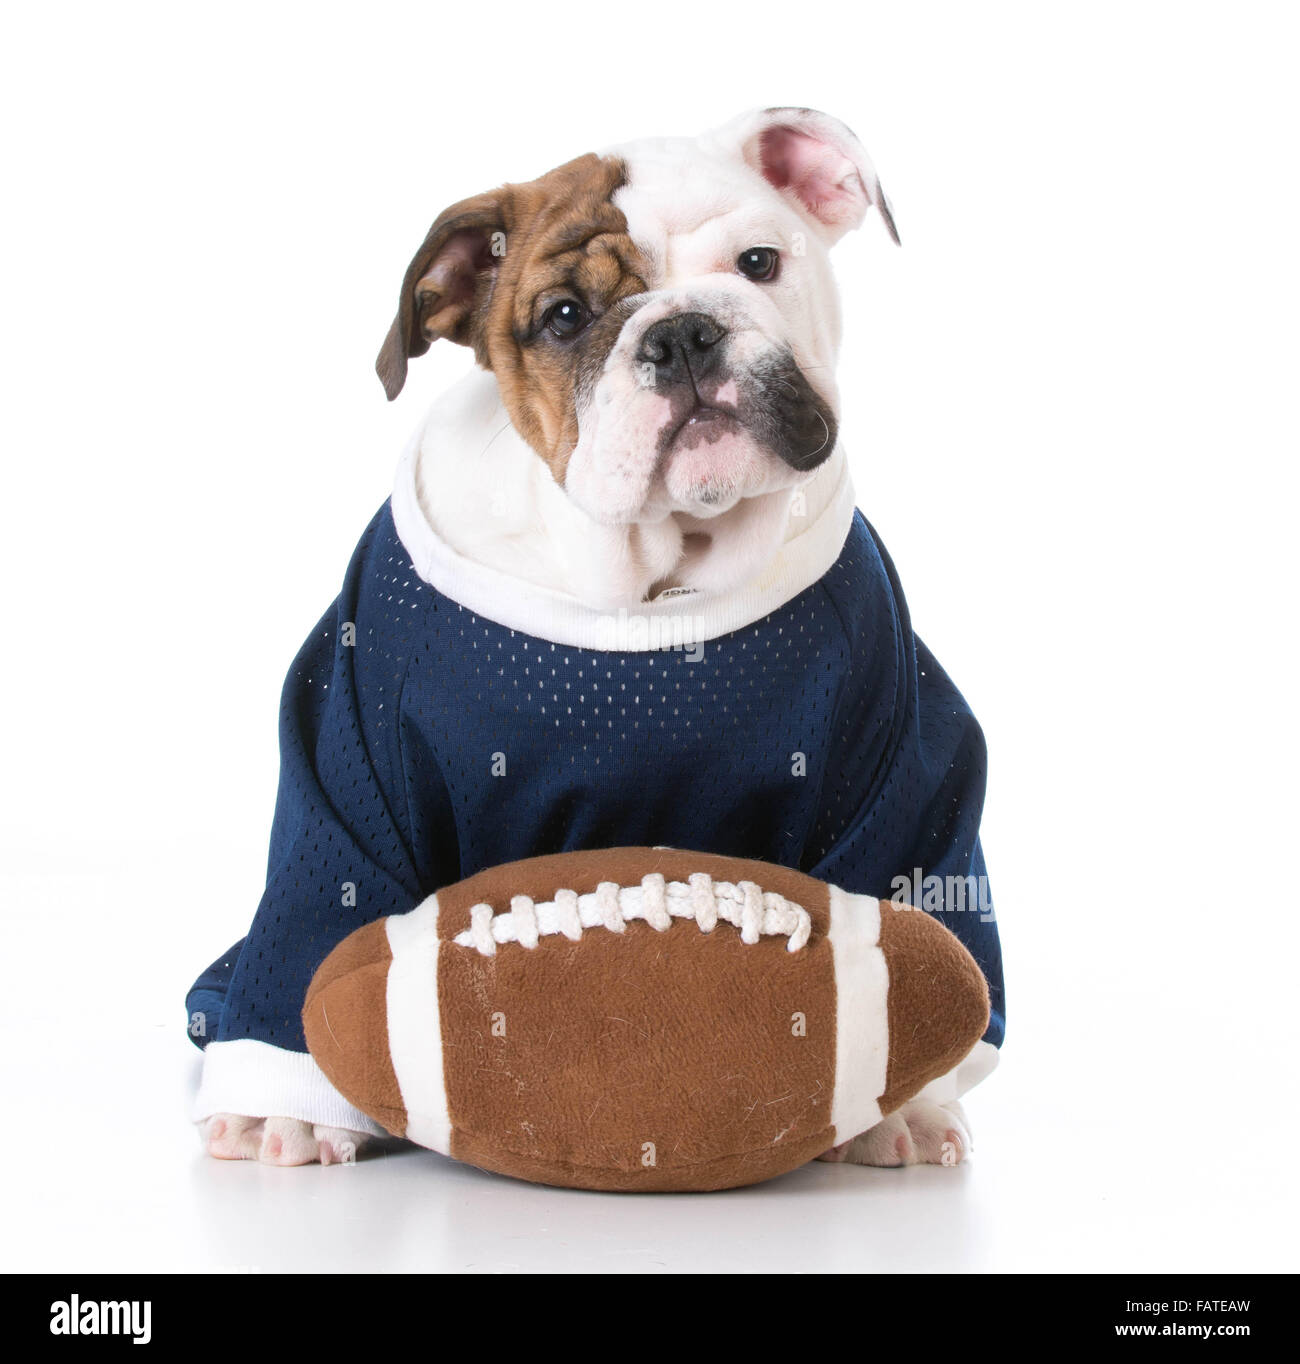 cute english bulldog puppy wearing football jersey on white background  Stock Photo - Alamy